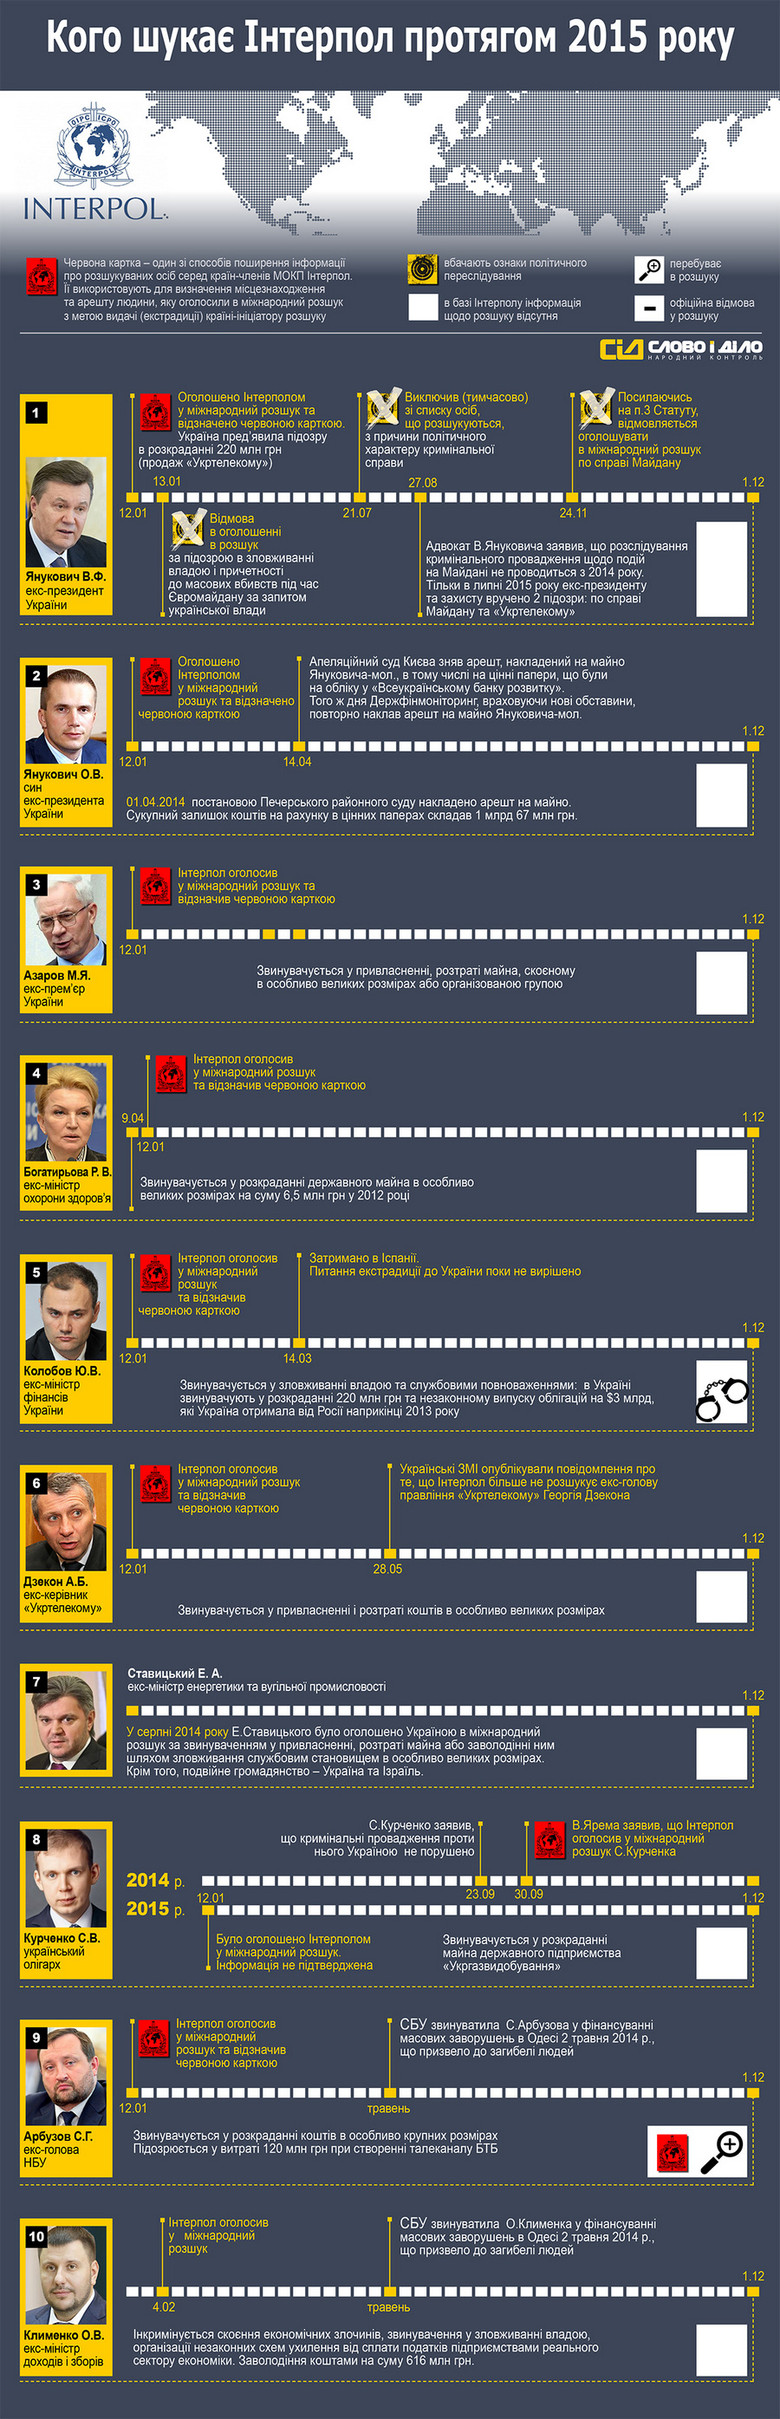 Майже два роки тому команда Віктора Януковича покинула територію України. Його оточенню вдалося не тільки втекти, але й вивести з країни капітали. Майже всі ці люди були оголошені в міжнародний розшук.